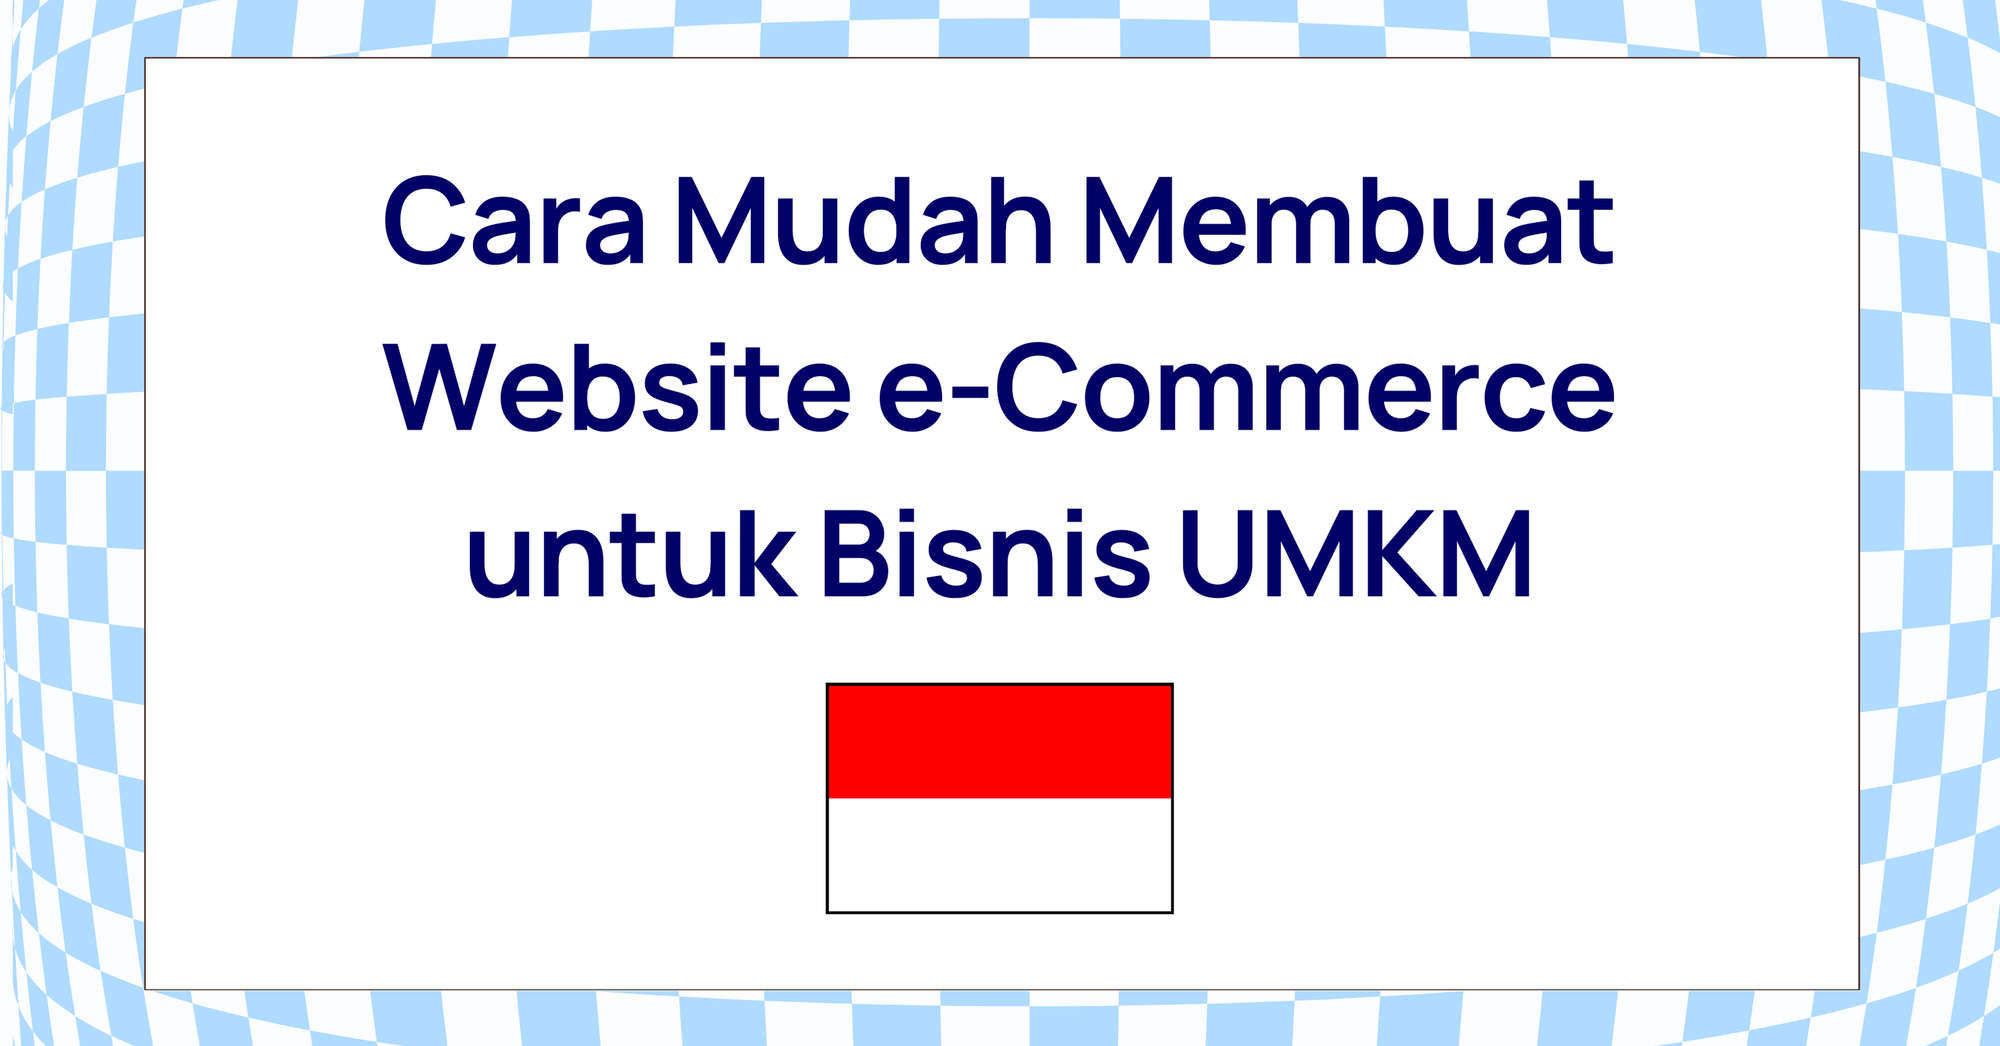 Cara Mudah Membuat Website e-Commerce untuk Bisnis UMKM di Indonesia